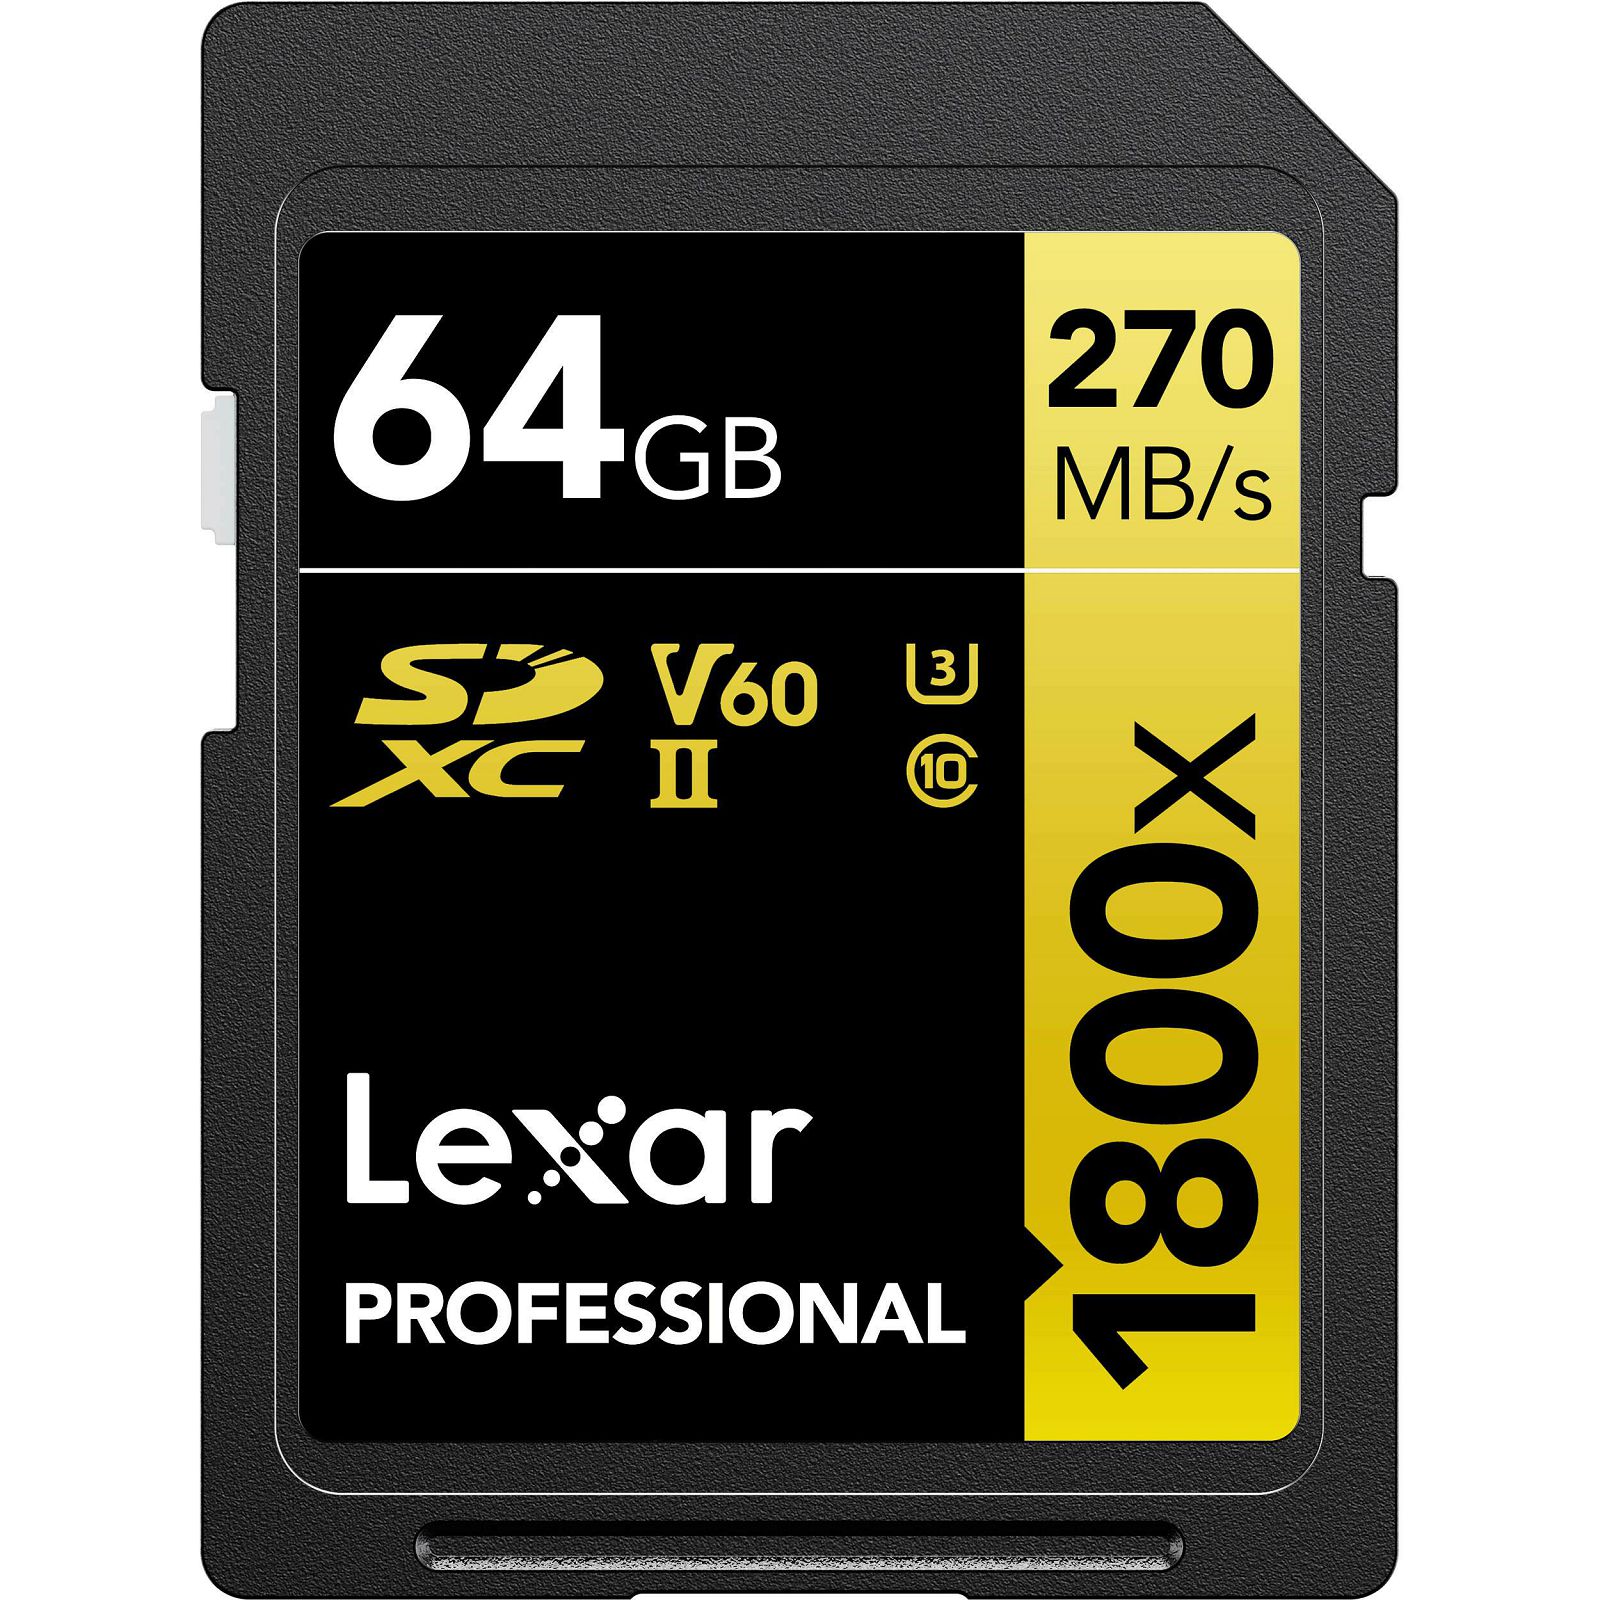 Lexar SDXC 64GB 1800x 270MB/s 180MB/s UHS-II C10 V60 U3 memorijska kartica (LSD1800064G-BNNNG)